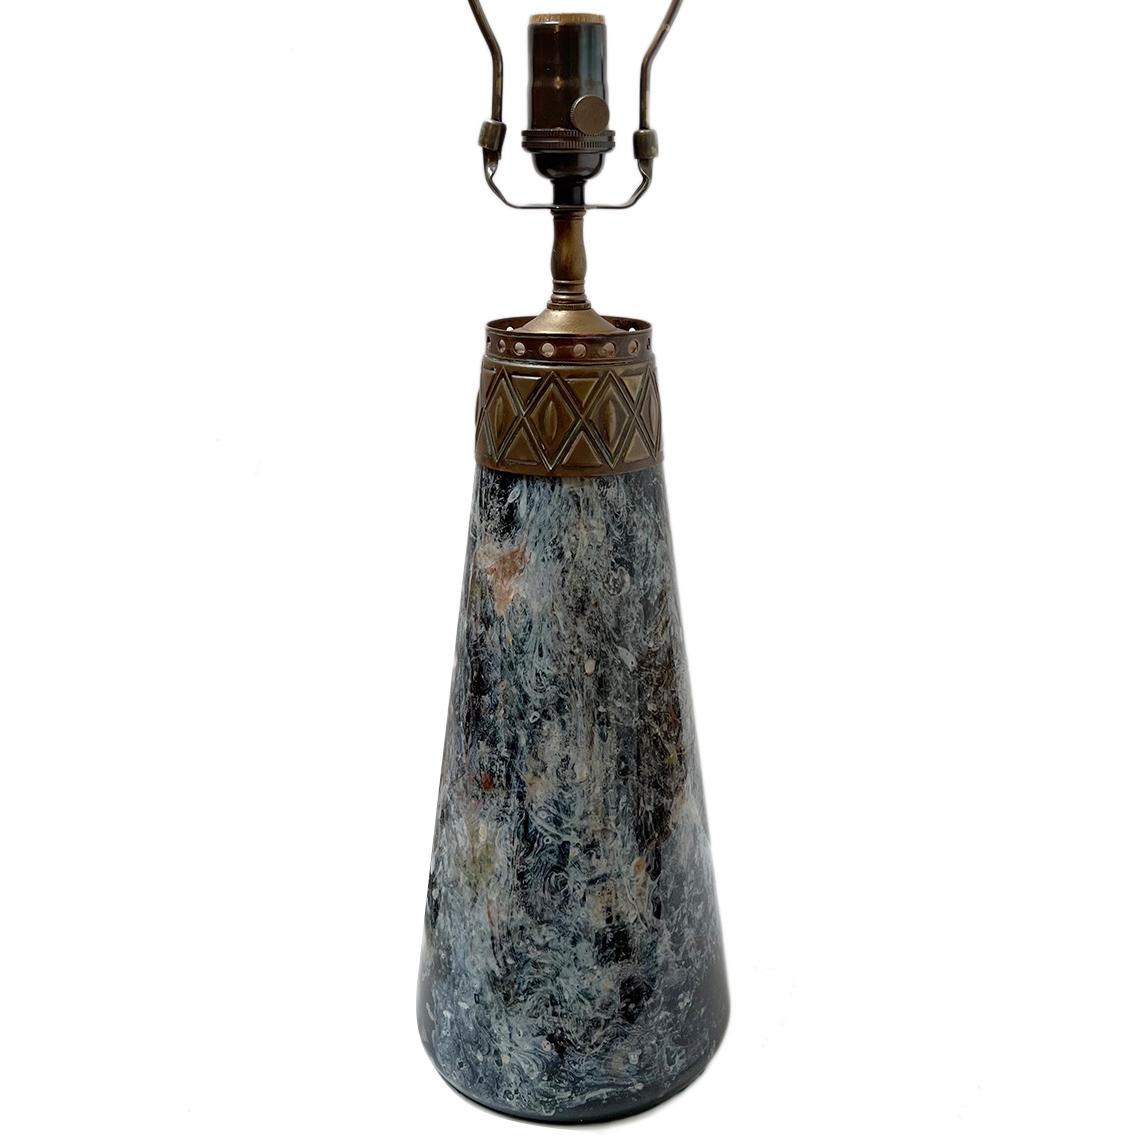 CIRCA 1900 Französisch Kunst Glas Öllampe umgewandelt, um elektrische mit Bronze-Details.

Abmessungen:
Höhe des Körpers: 14,5